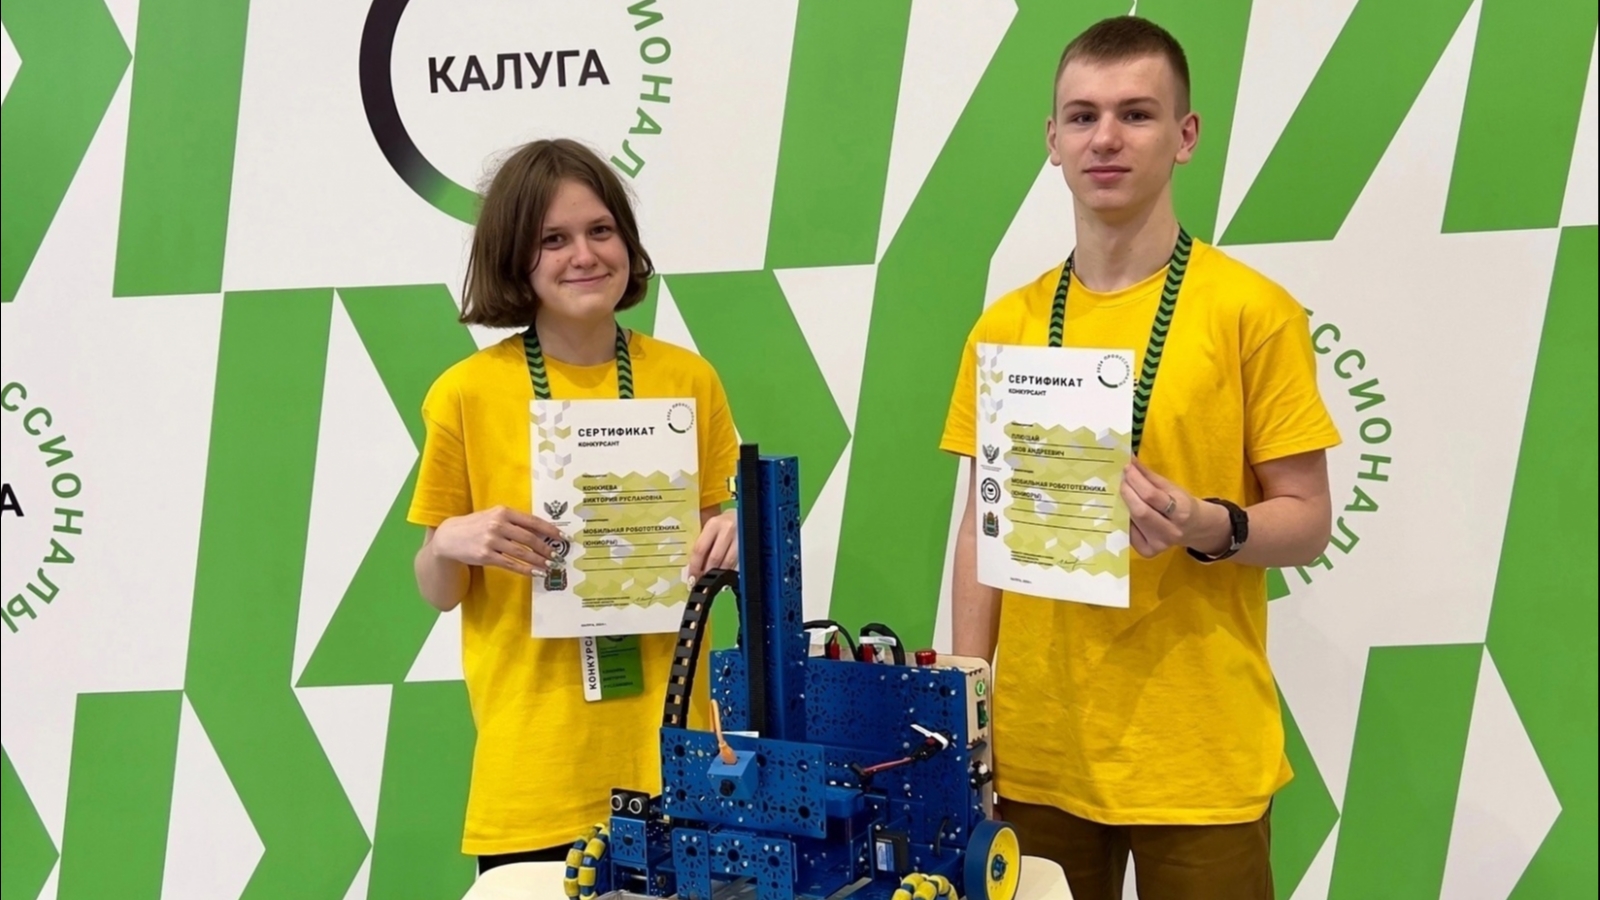 Оленегорская команда по робототехнике среди лучших в России